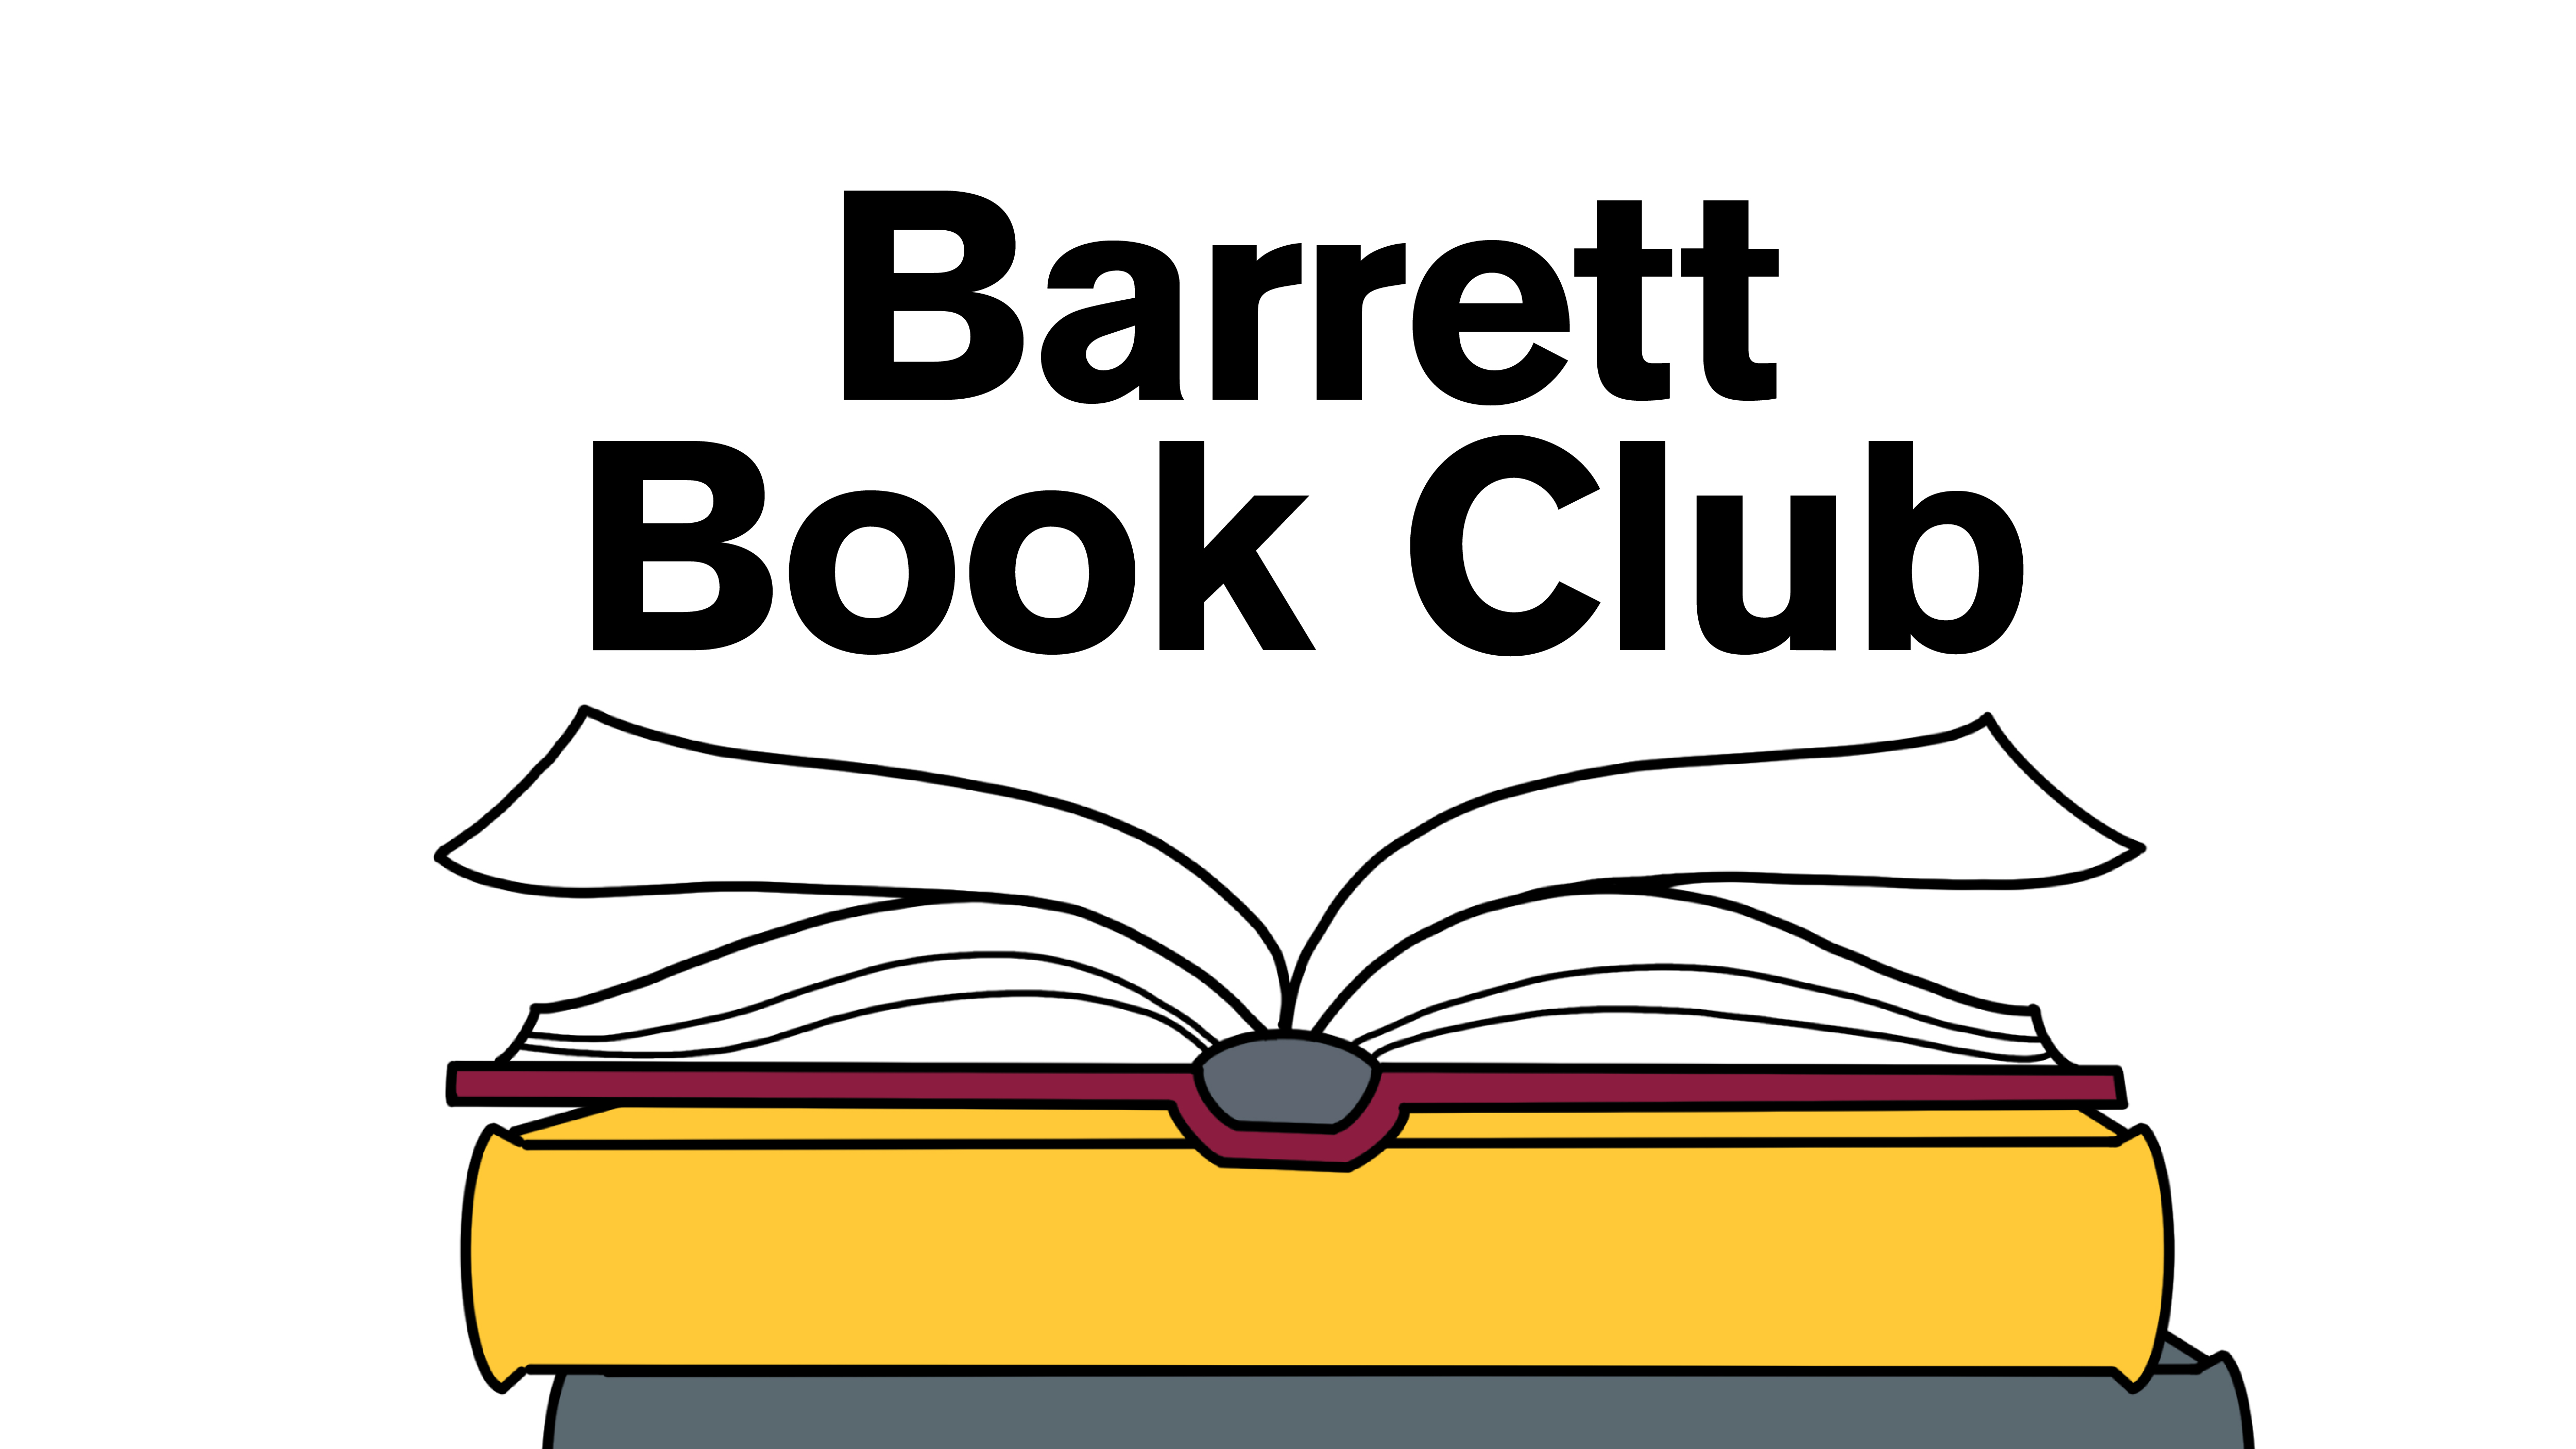 Barrett Book Club